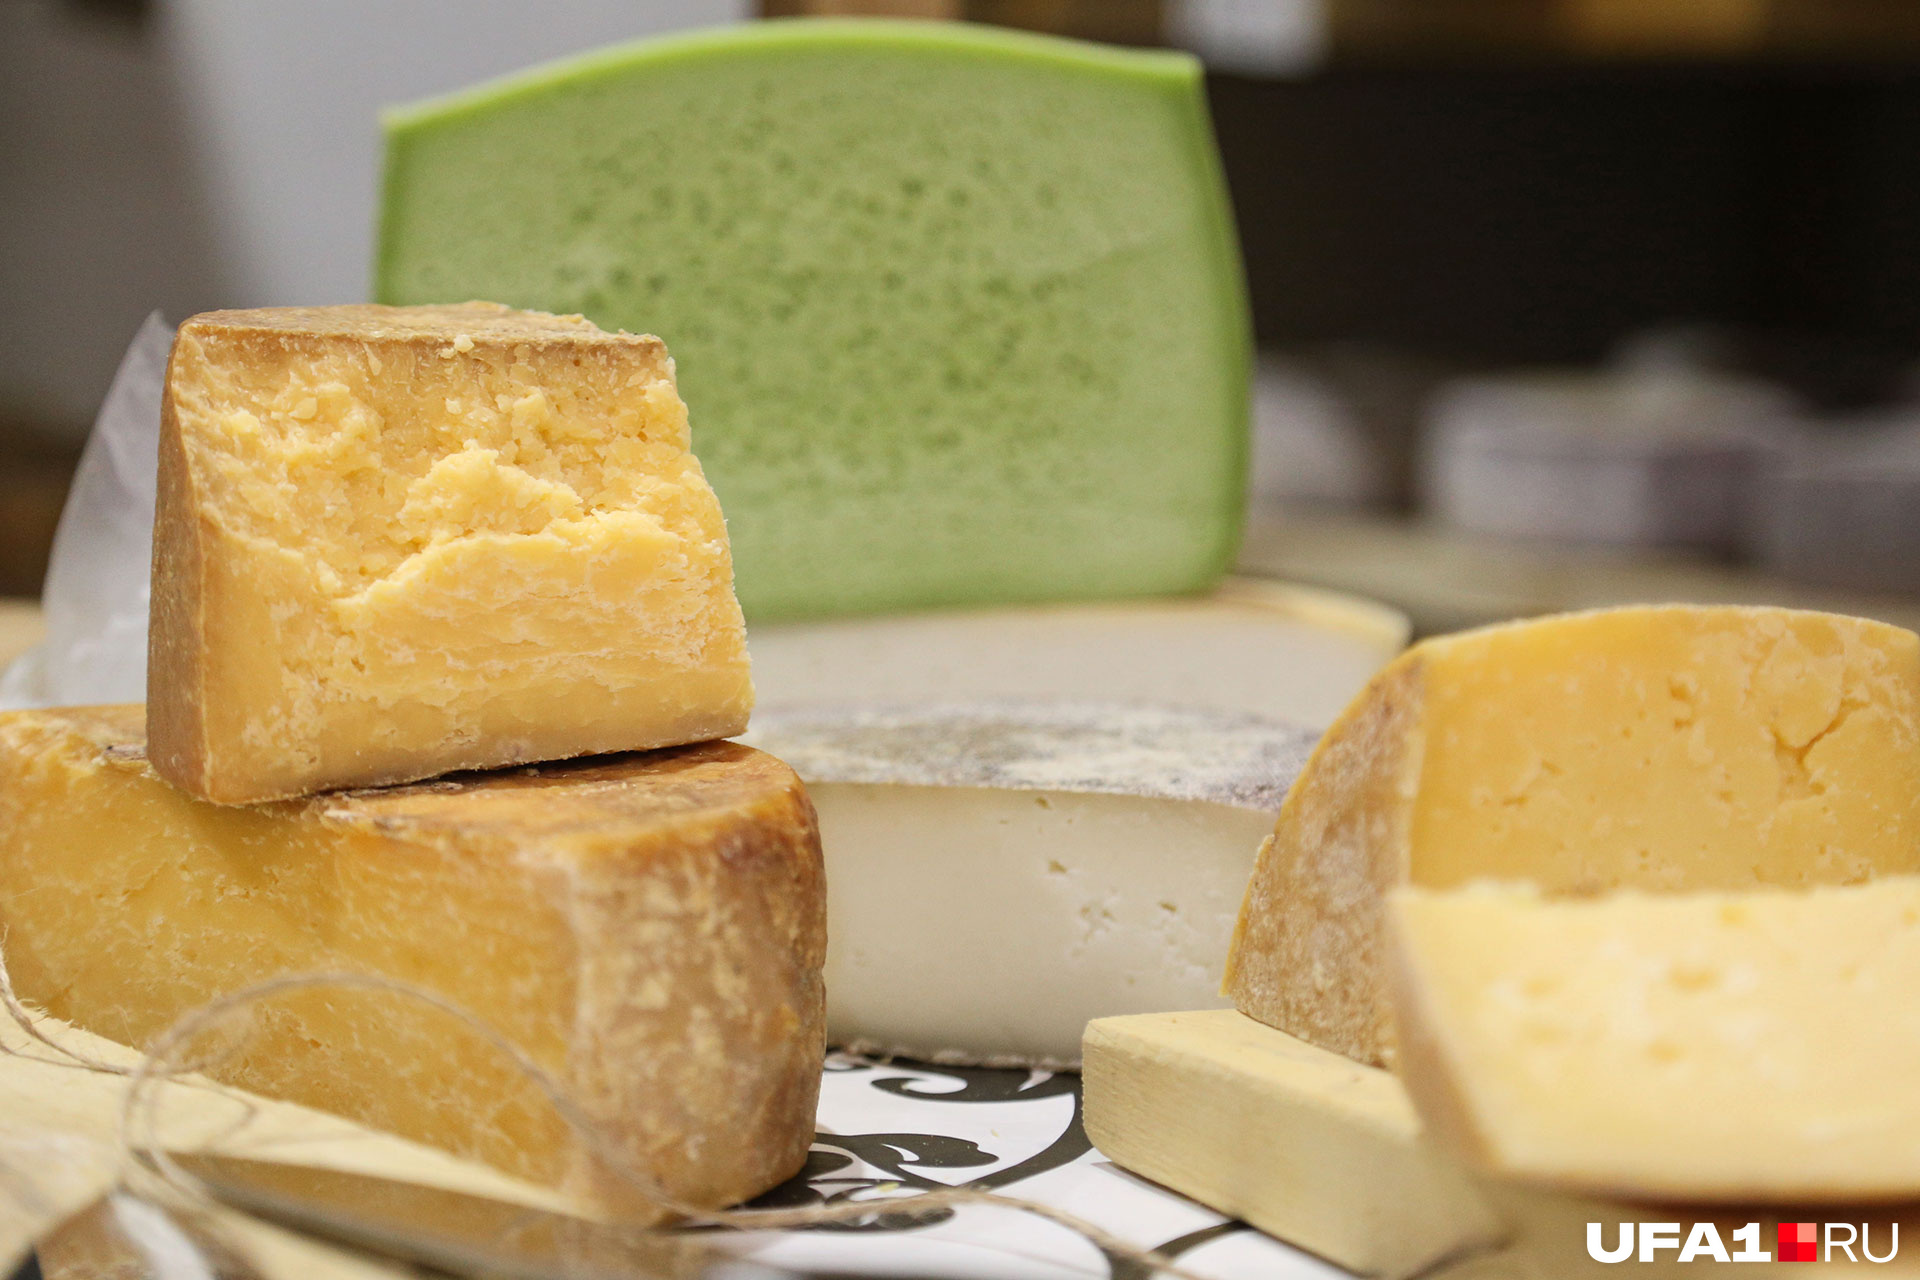 Всего Гузель освоила приготовление 48 сортов сыра, но у каждого из них есть еще по 3–4 разновидности. Даже по самым скромным подсчетам, это 144 рецепта!